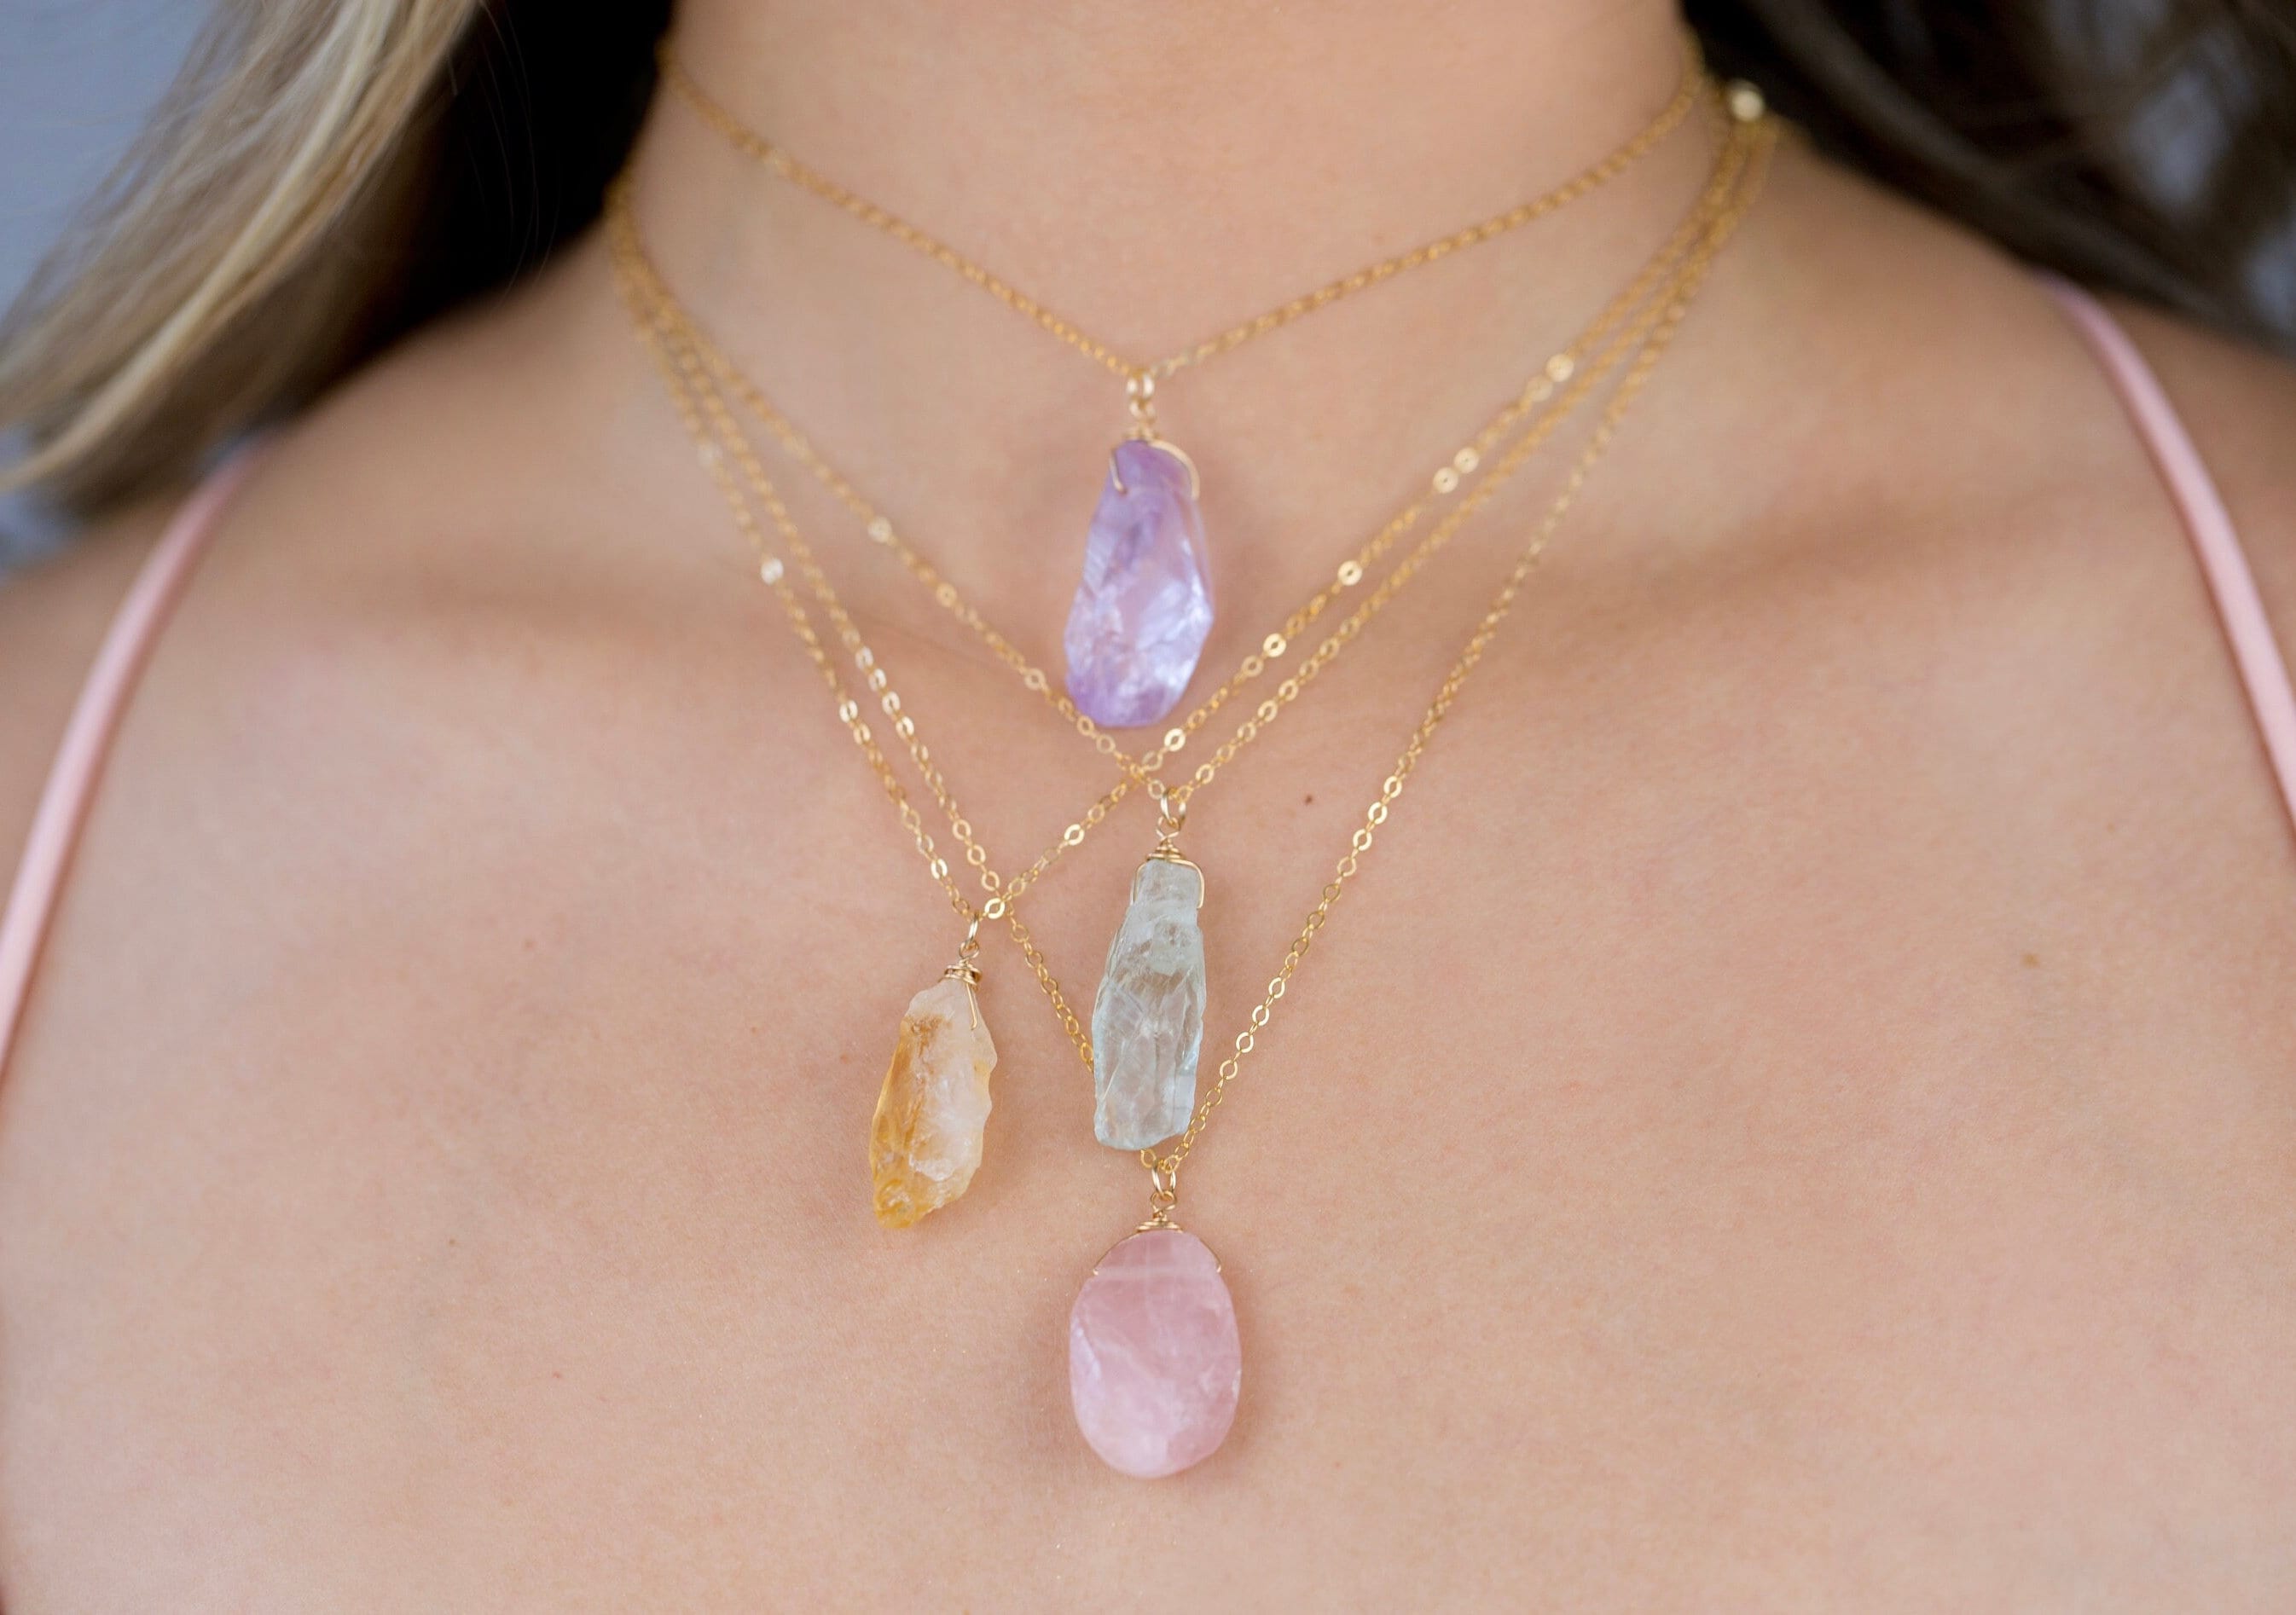 Charm necklace: rose quartz